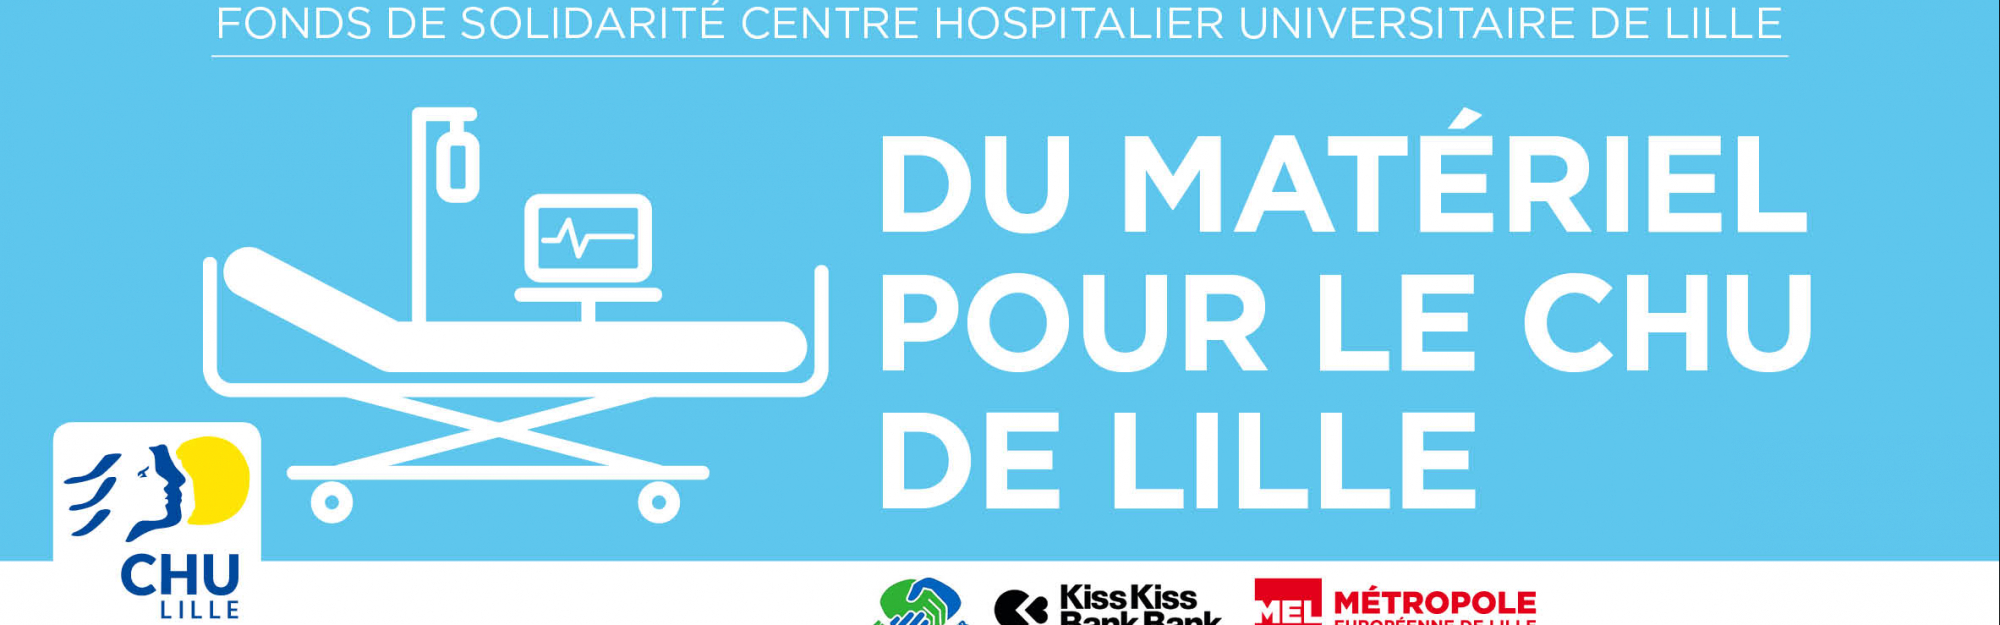 Le CHU de Lille, avec le soutien de la Métropole Européenne de Lille et de la Ville de Lille, lance une campagne de financement participatif pour renforcer les équipements des hôpitaux du territoire